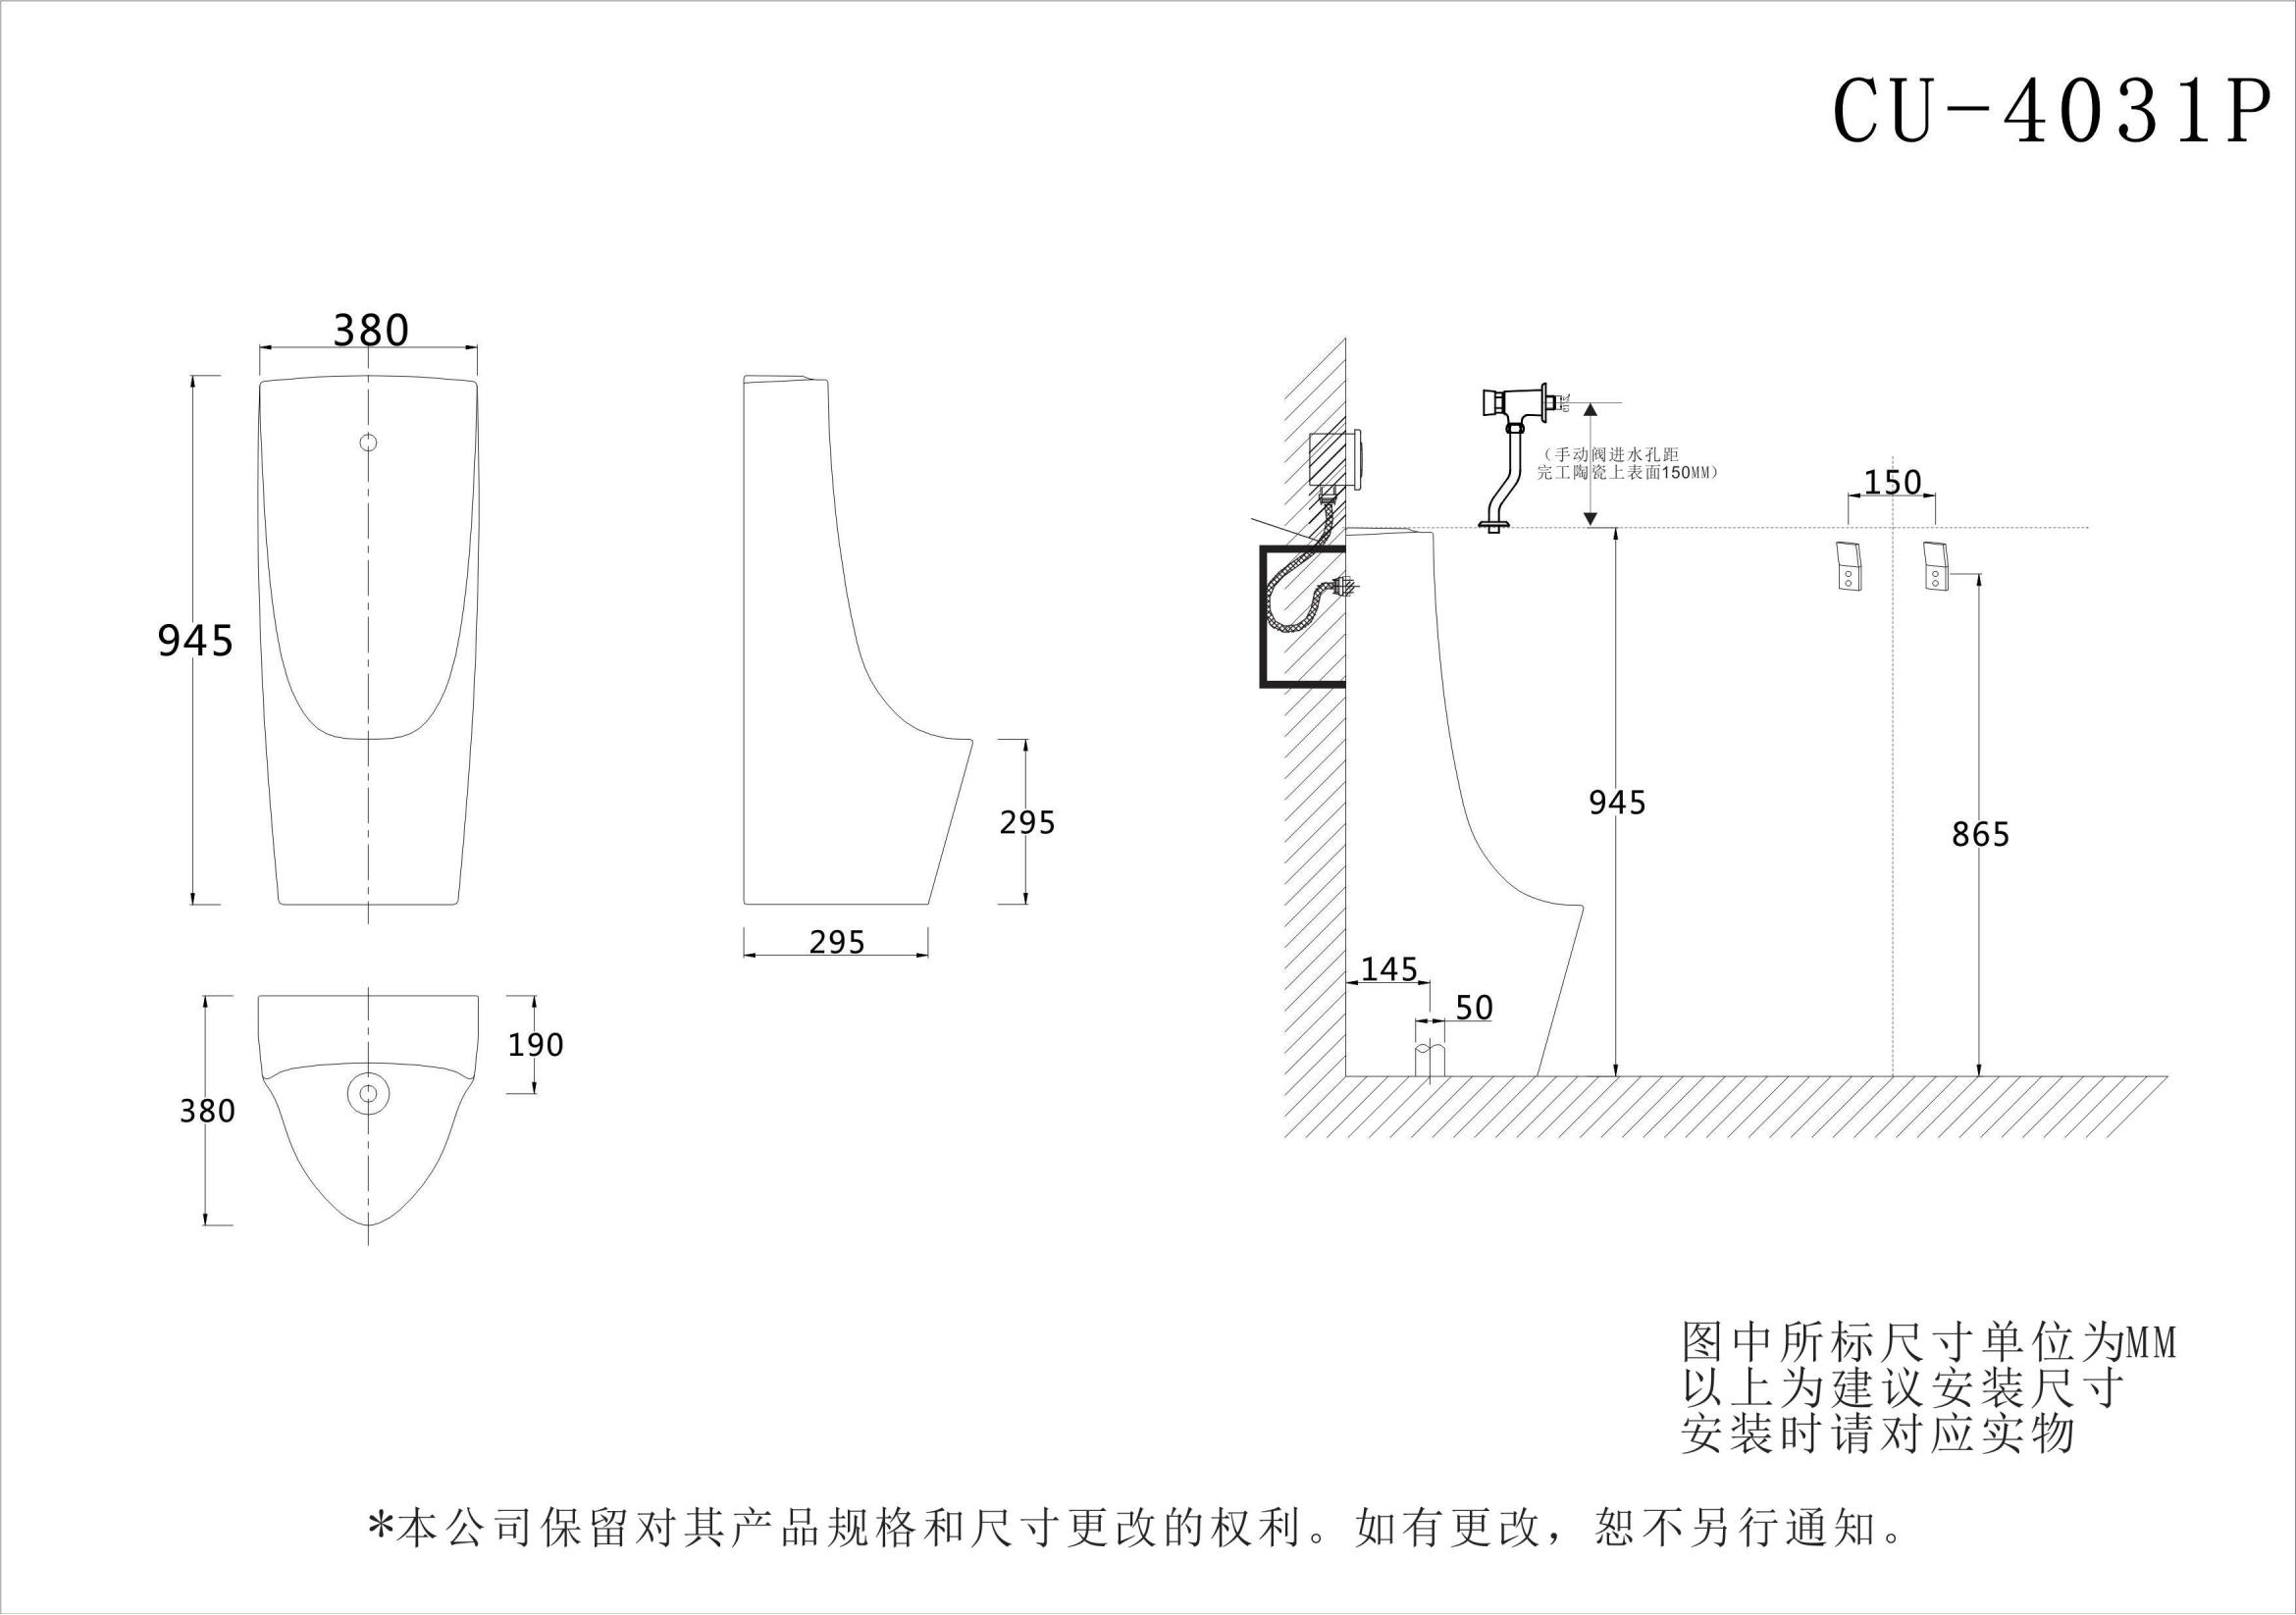 CU4031P drawing (2)